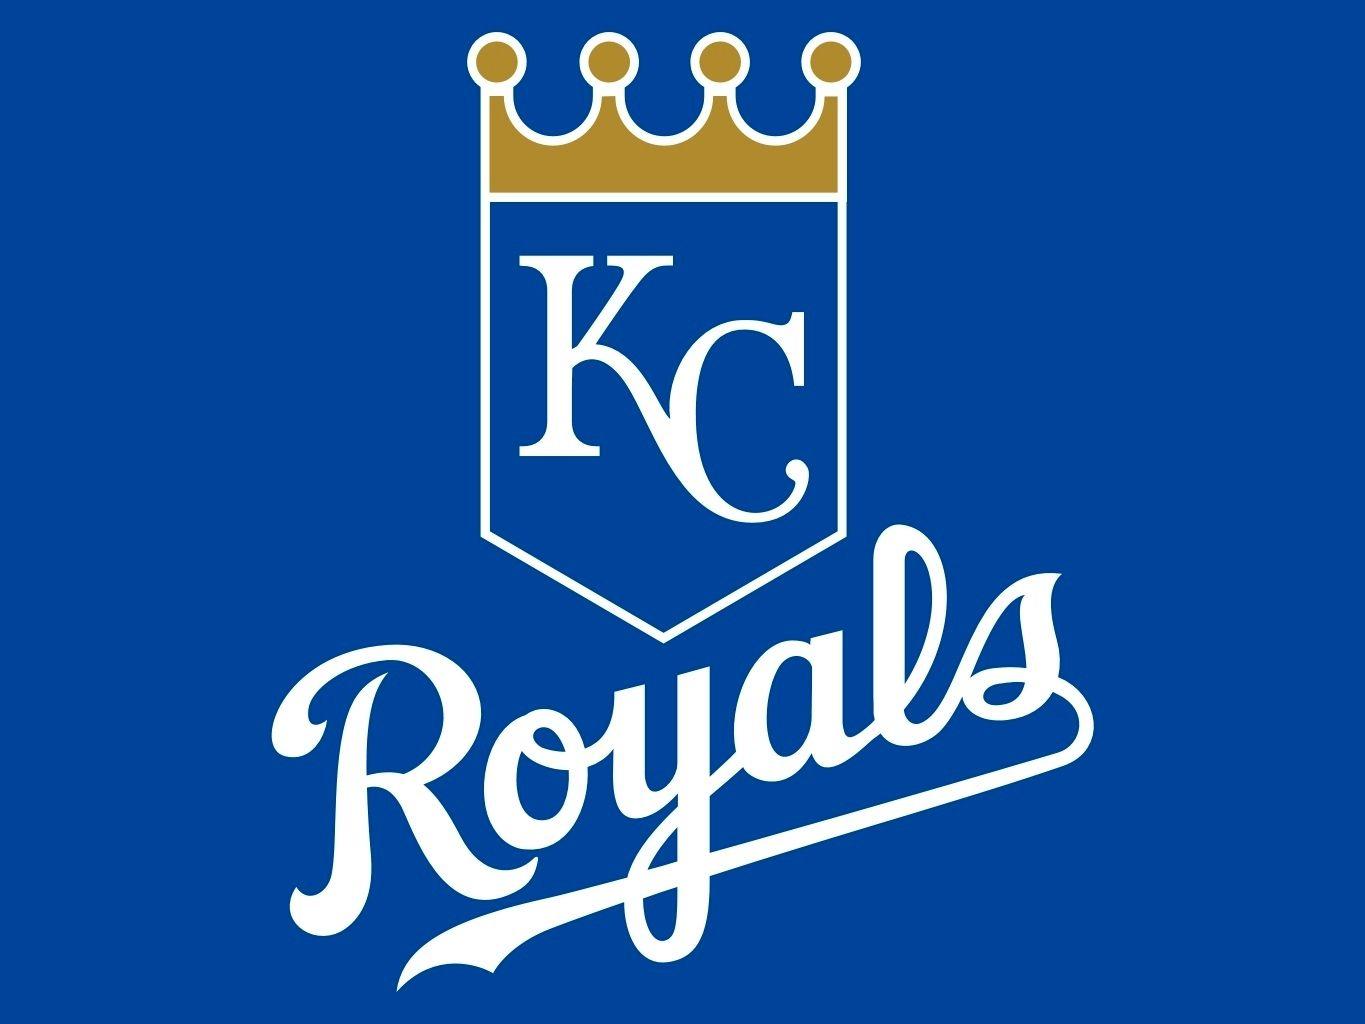 Royals Baseball Logo - Royals Baseball Logos | Kansas City Royals | KC Royals | Pinterest ...